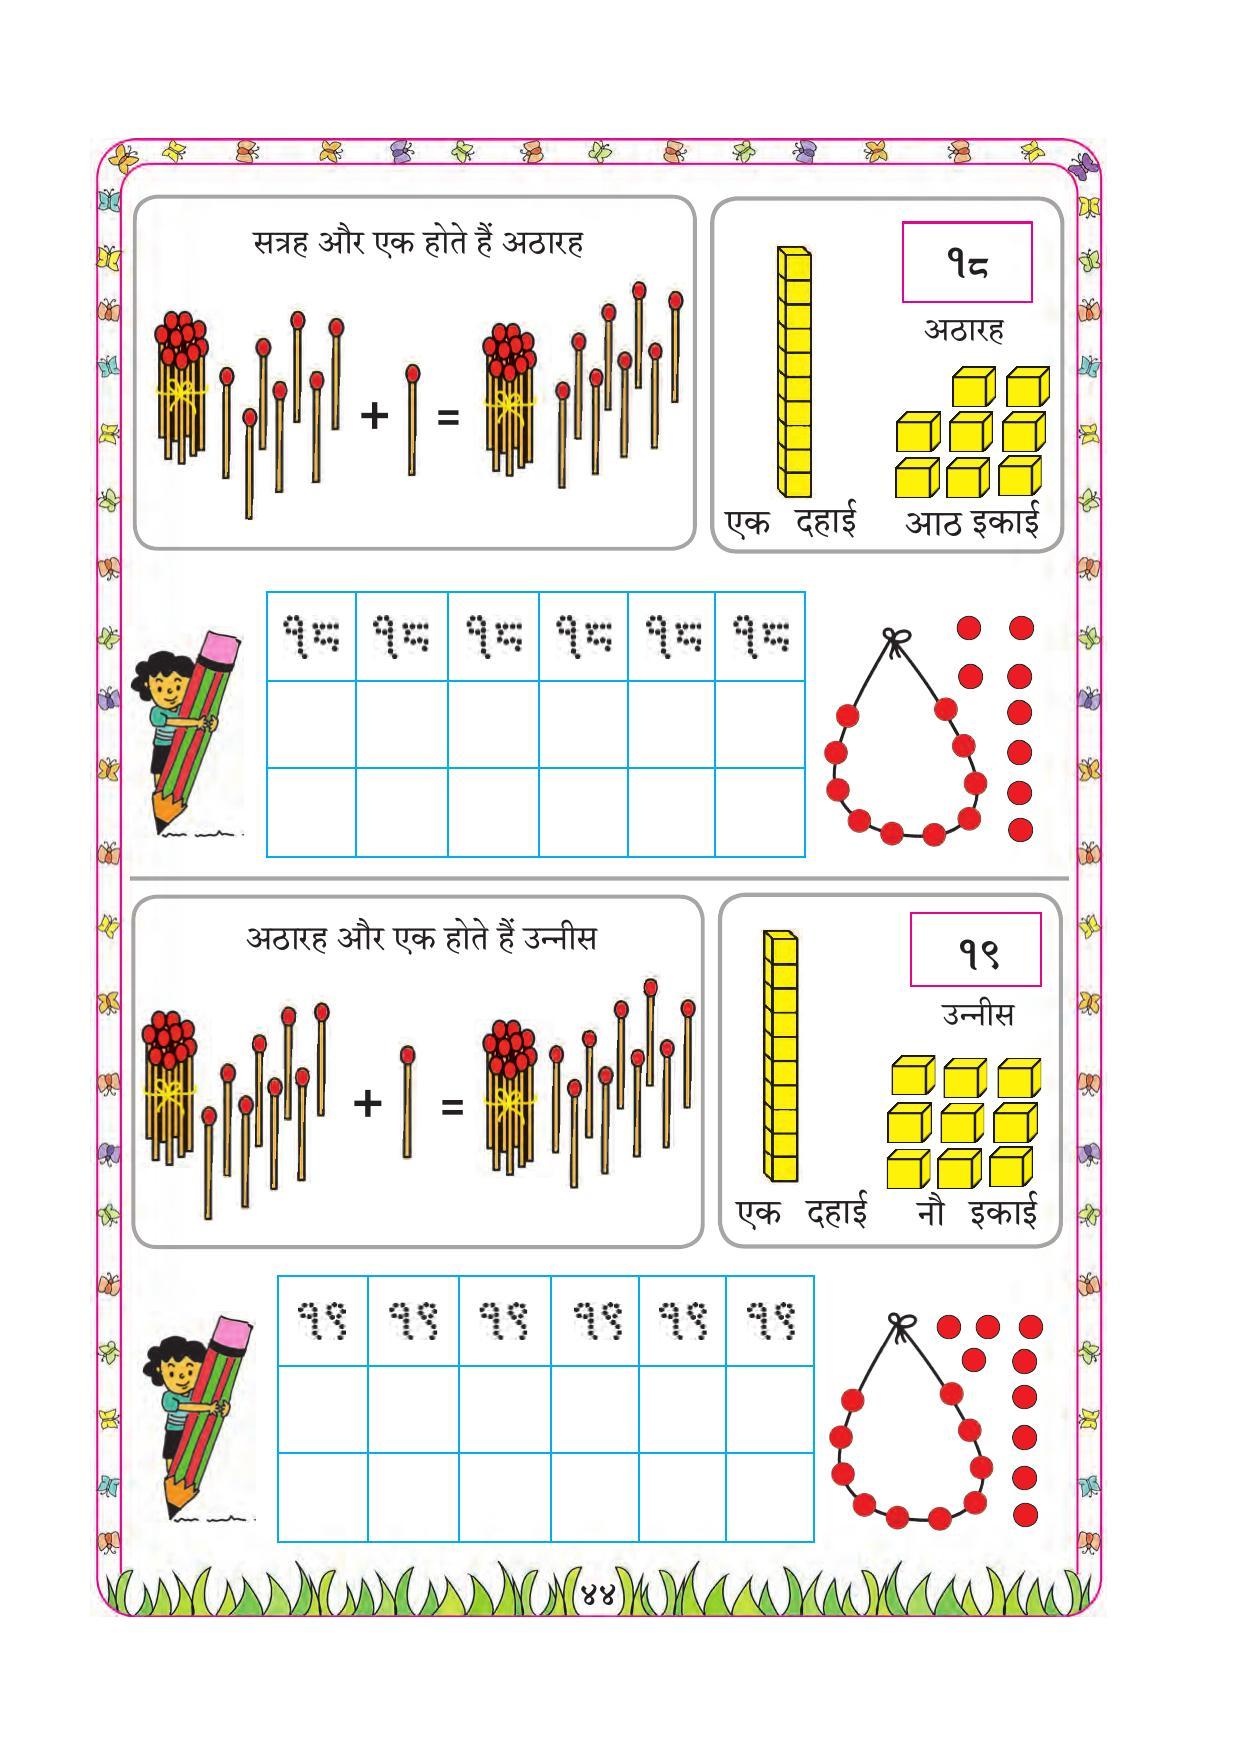 Maharashtra Board Class 1 Maths (Hindi Medium) Textbook - Page 54